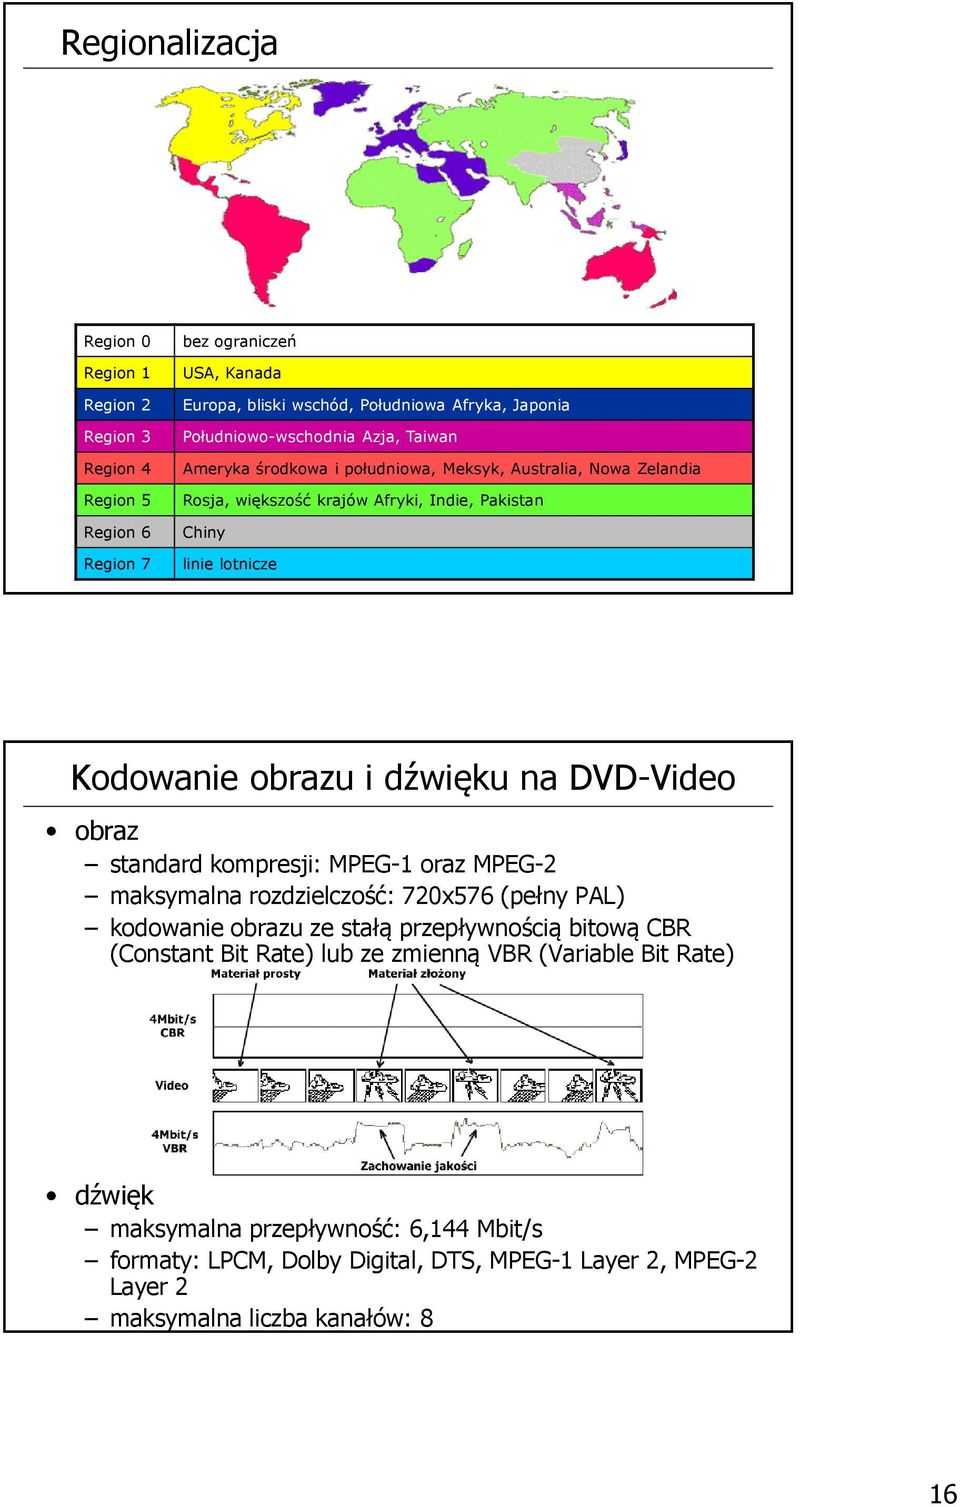 obrazu i dźwięku na DVD-Video obraz standard kompresji: MPEG-1 oraz MPEG-2 maksymalna rozdzielczość: 720x576 (pełny PAL) kodowanie obrazu ze stałą przepływnością bitową CBR